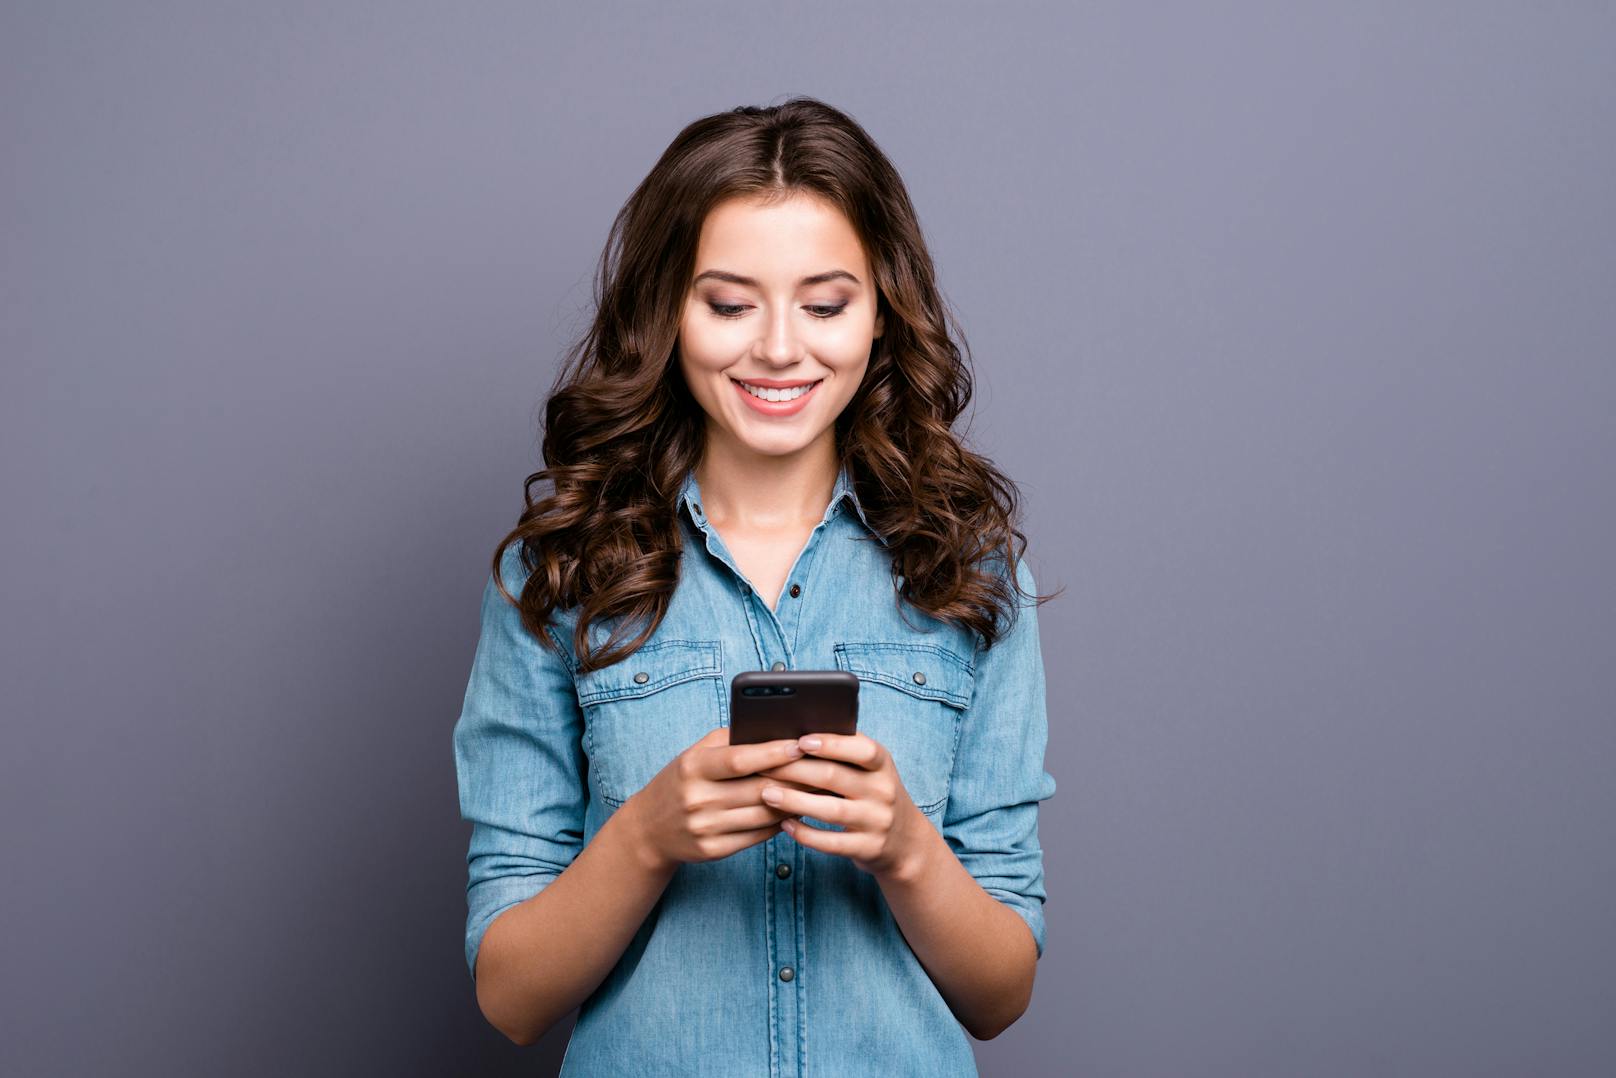 User der Dating-App Bumble geben an ihr Match lieber weiterhin virtuell kennenzulernen als sich mit ihm zu treffen.